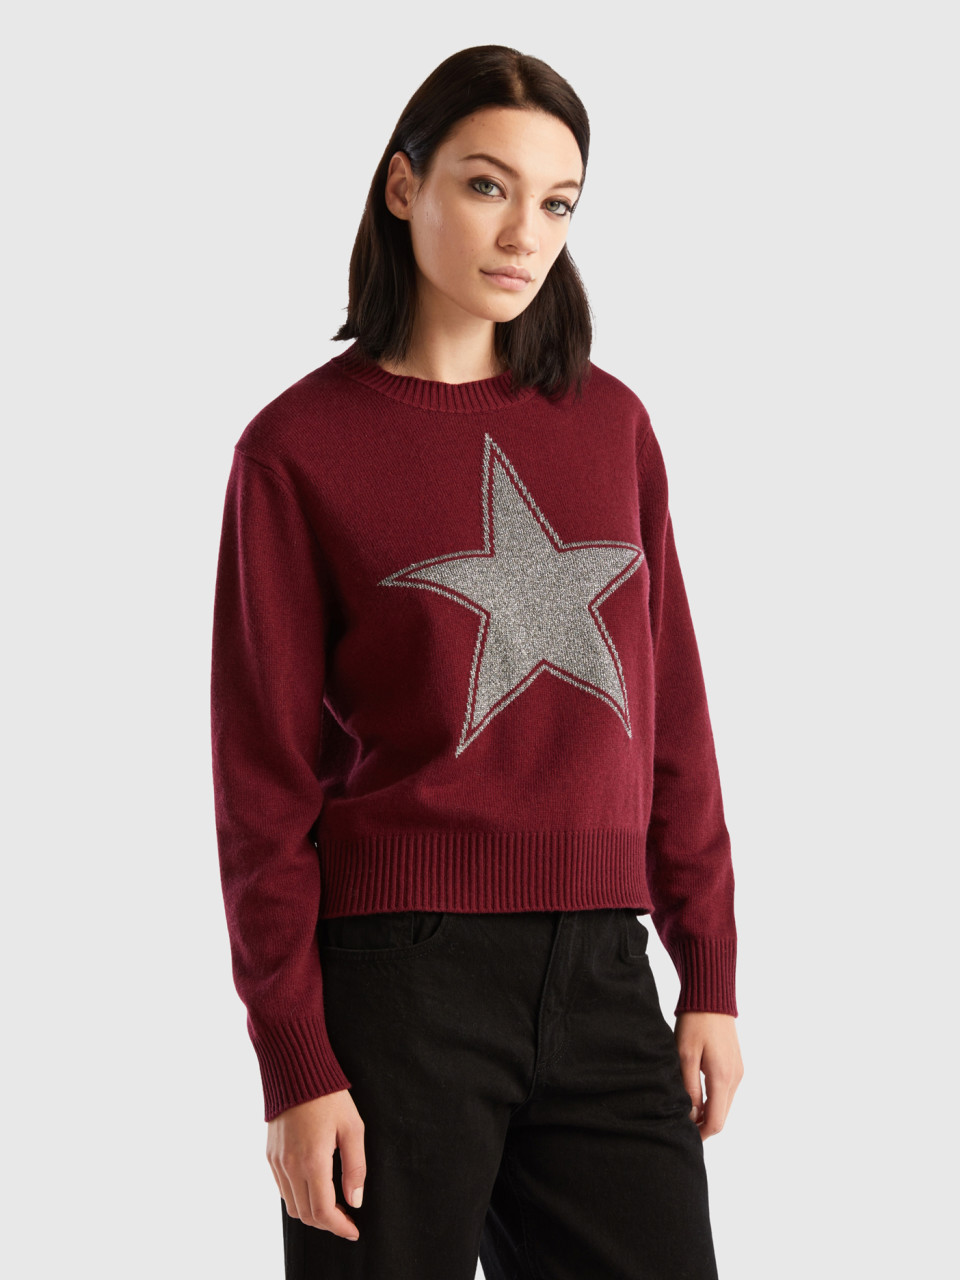 Benetton, Sweater With Lurex Star, Burgundy, Women